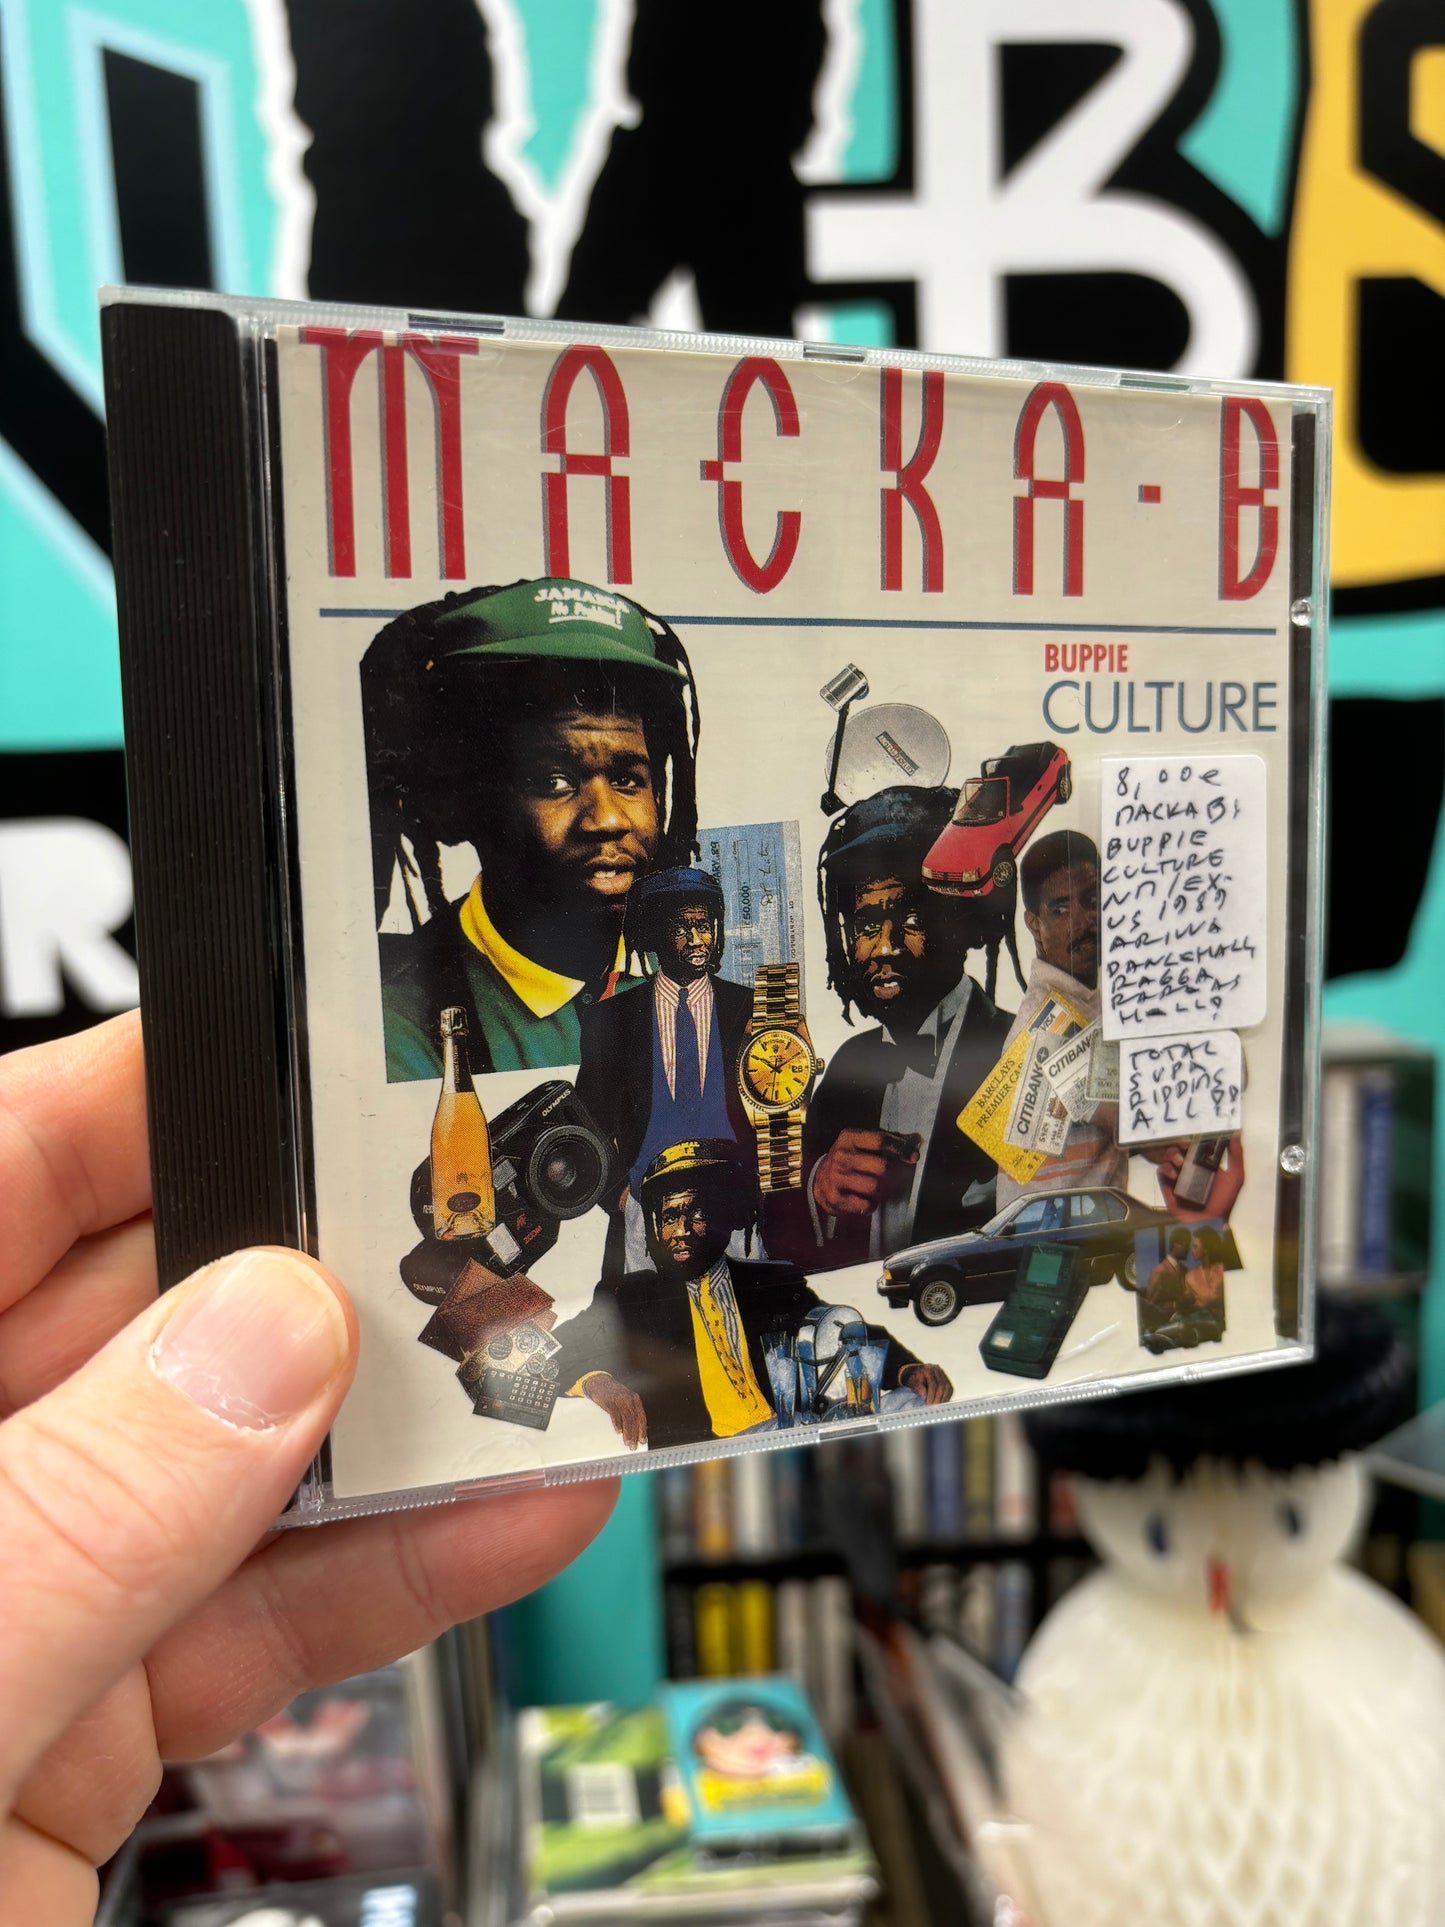 Macka B: Buppie Culture, CD, US 1989